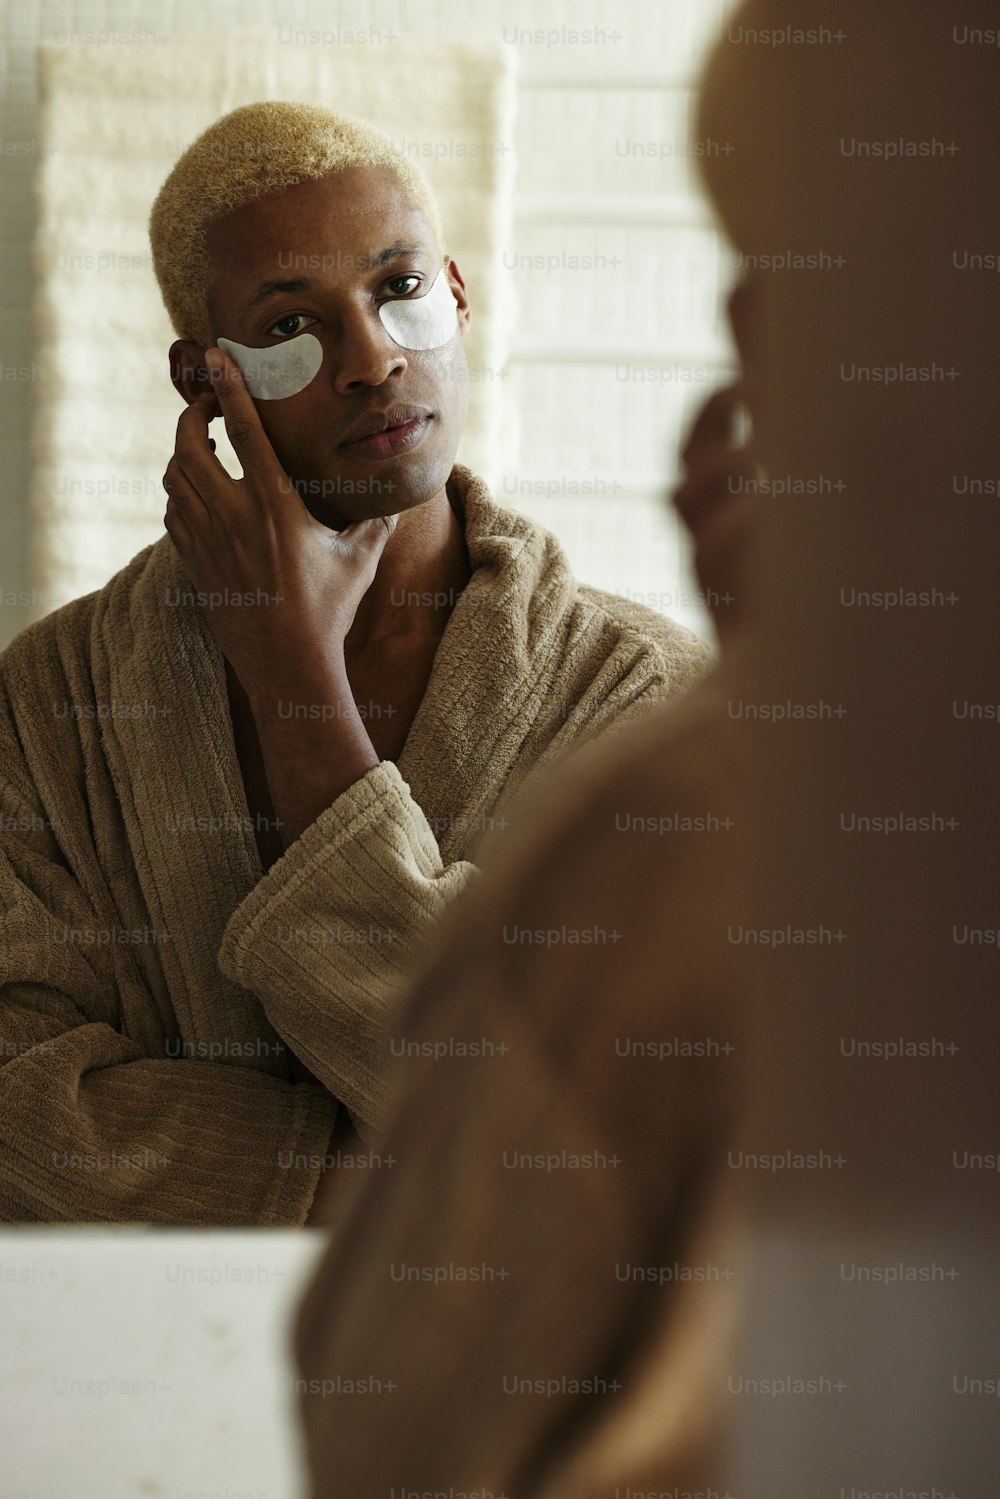 목욕 가운을 입은 남자가 얼굴을 면도하��고 있다